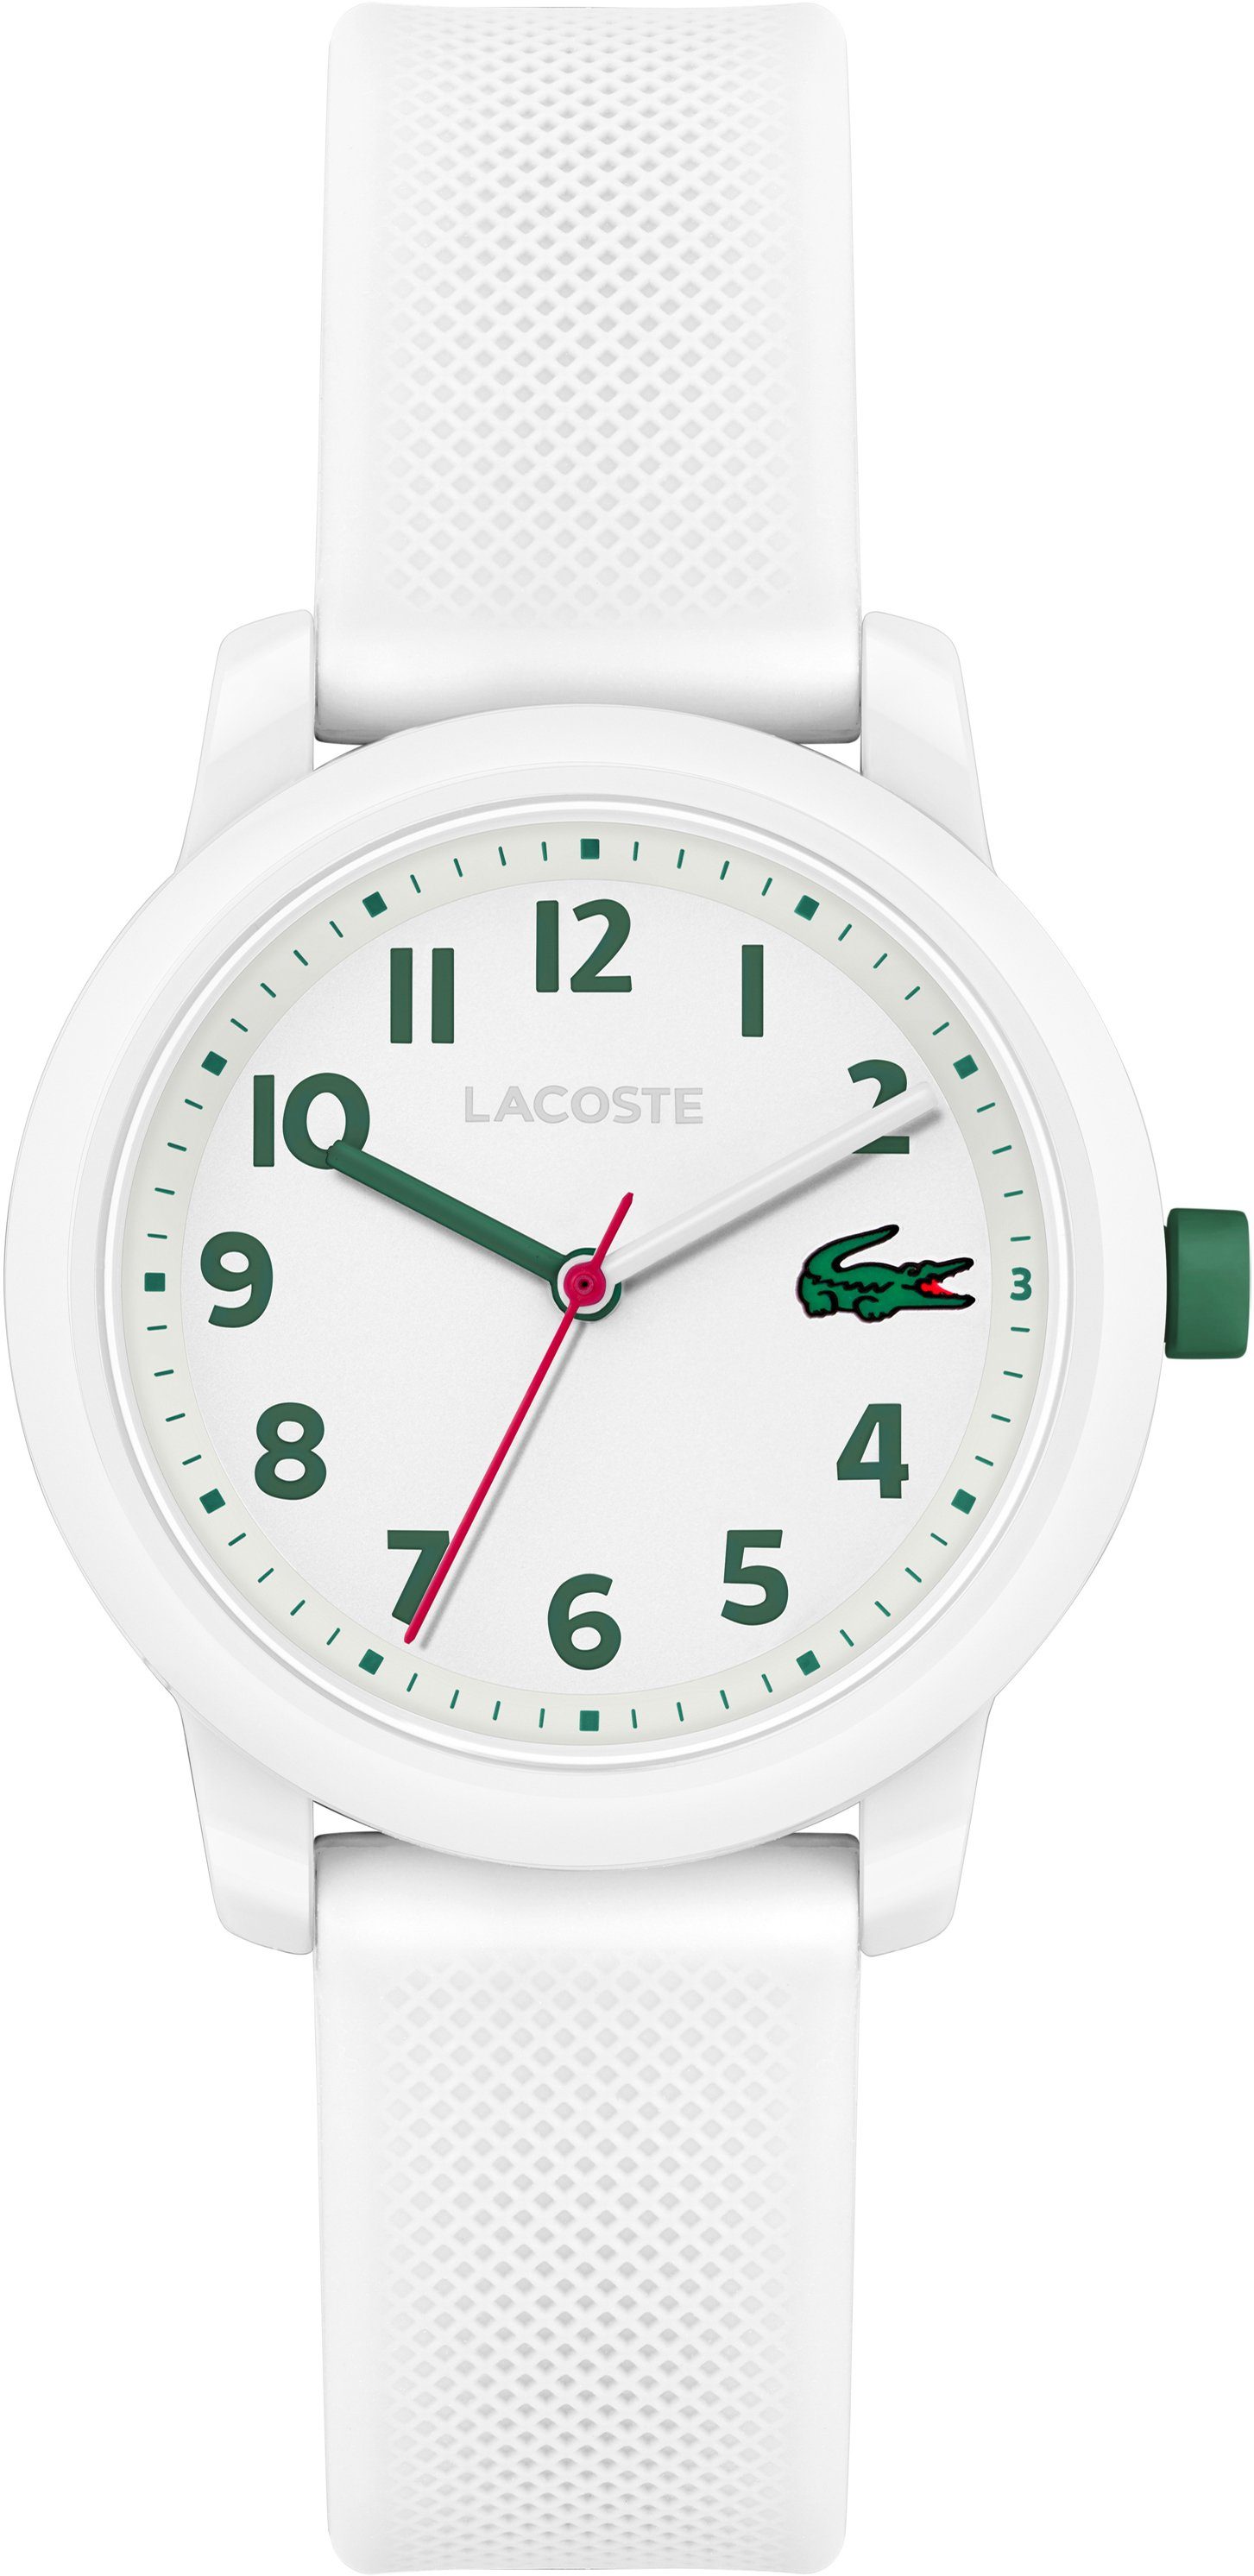 kaufen Weiße Lacoste online Uhren | OTTO